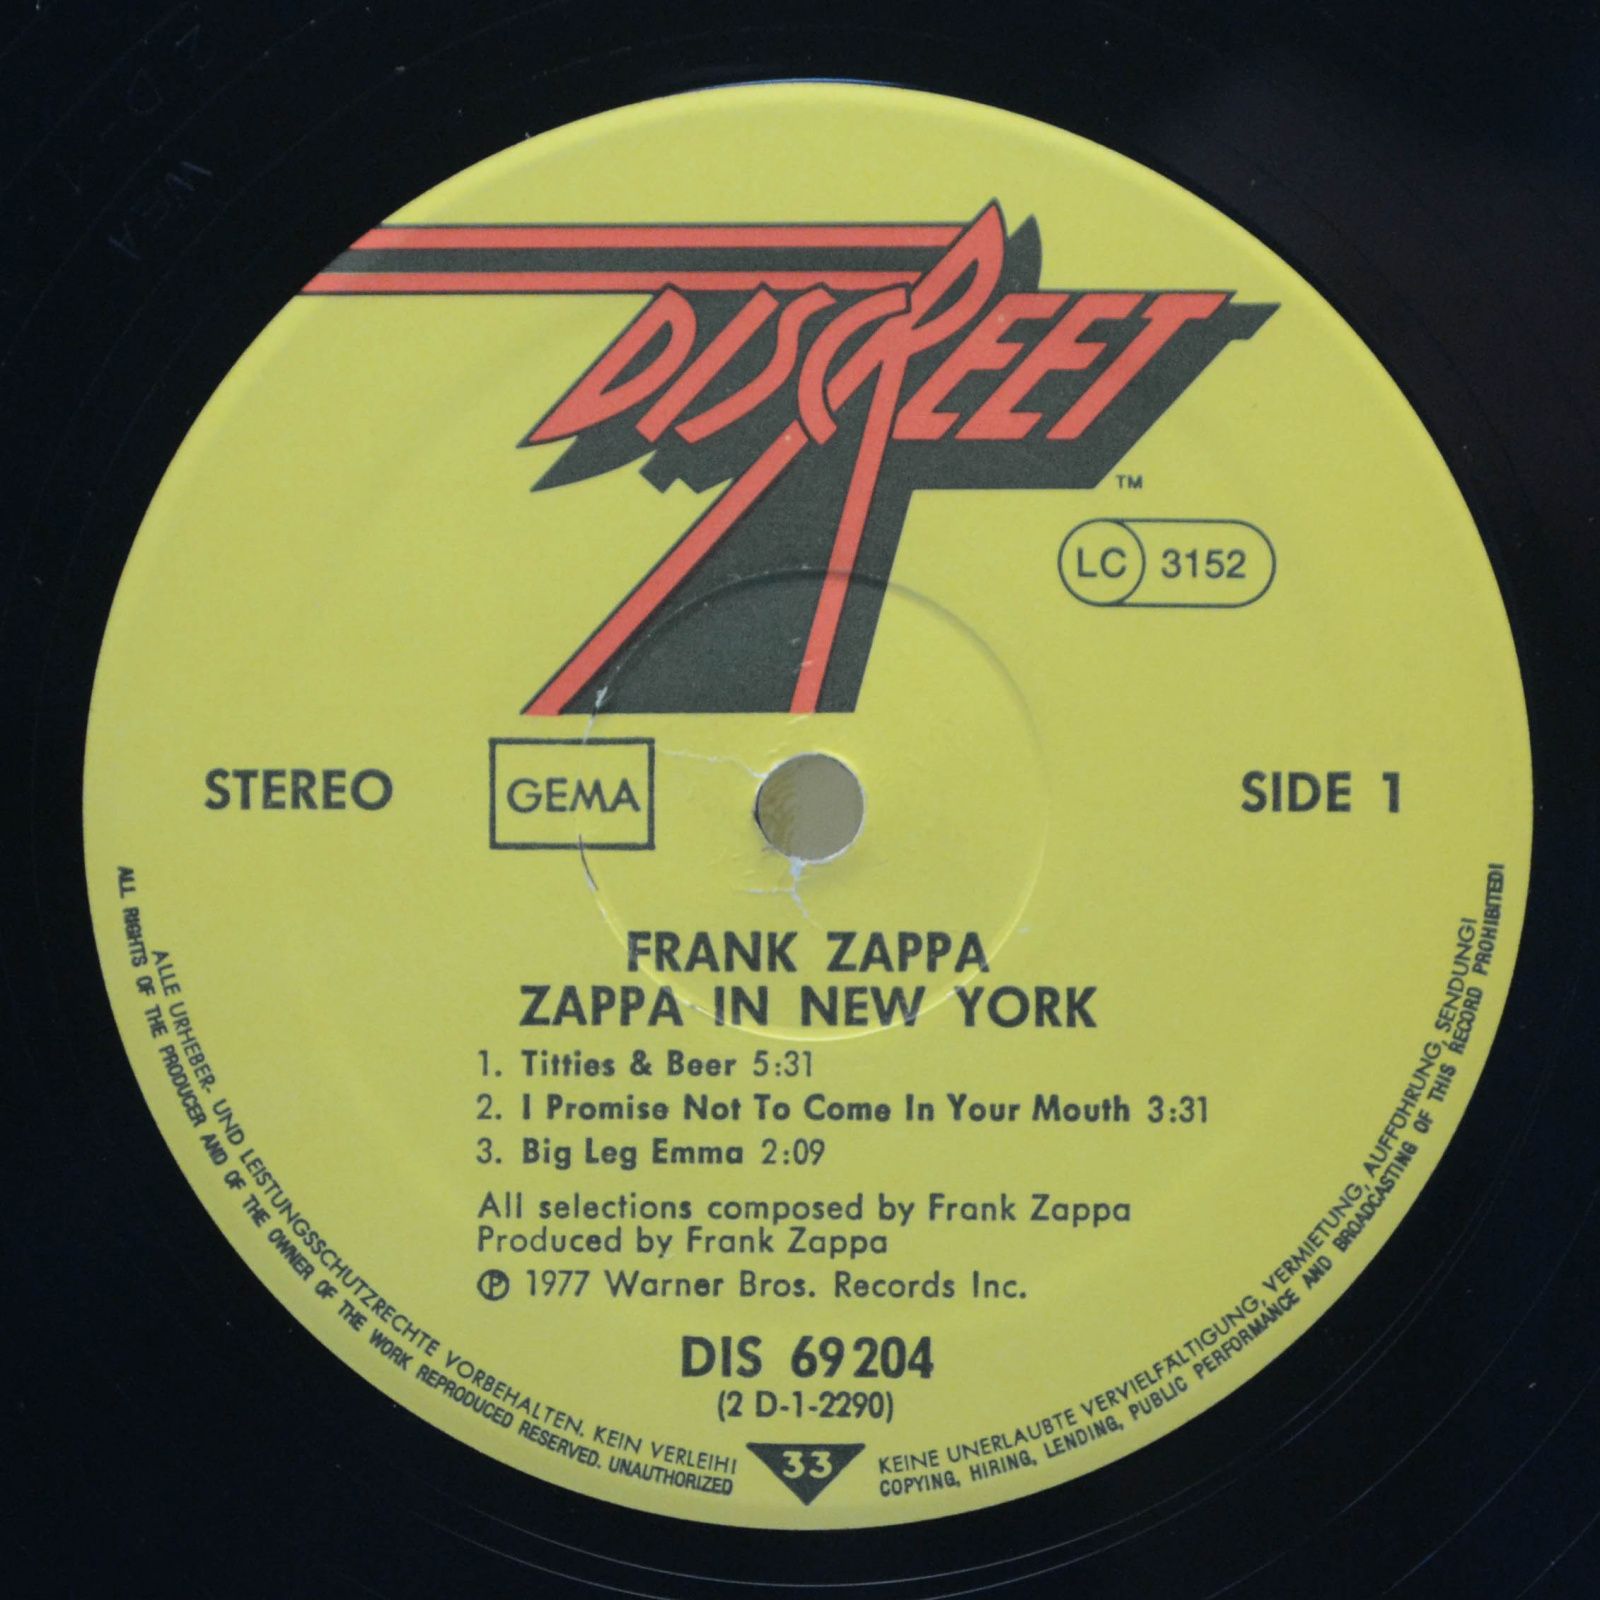 Frank Zappa — Zappa in New York, 1977